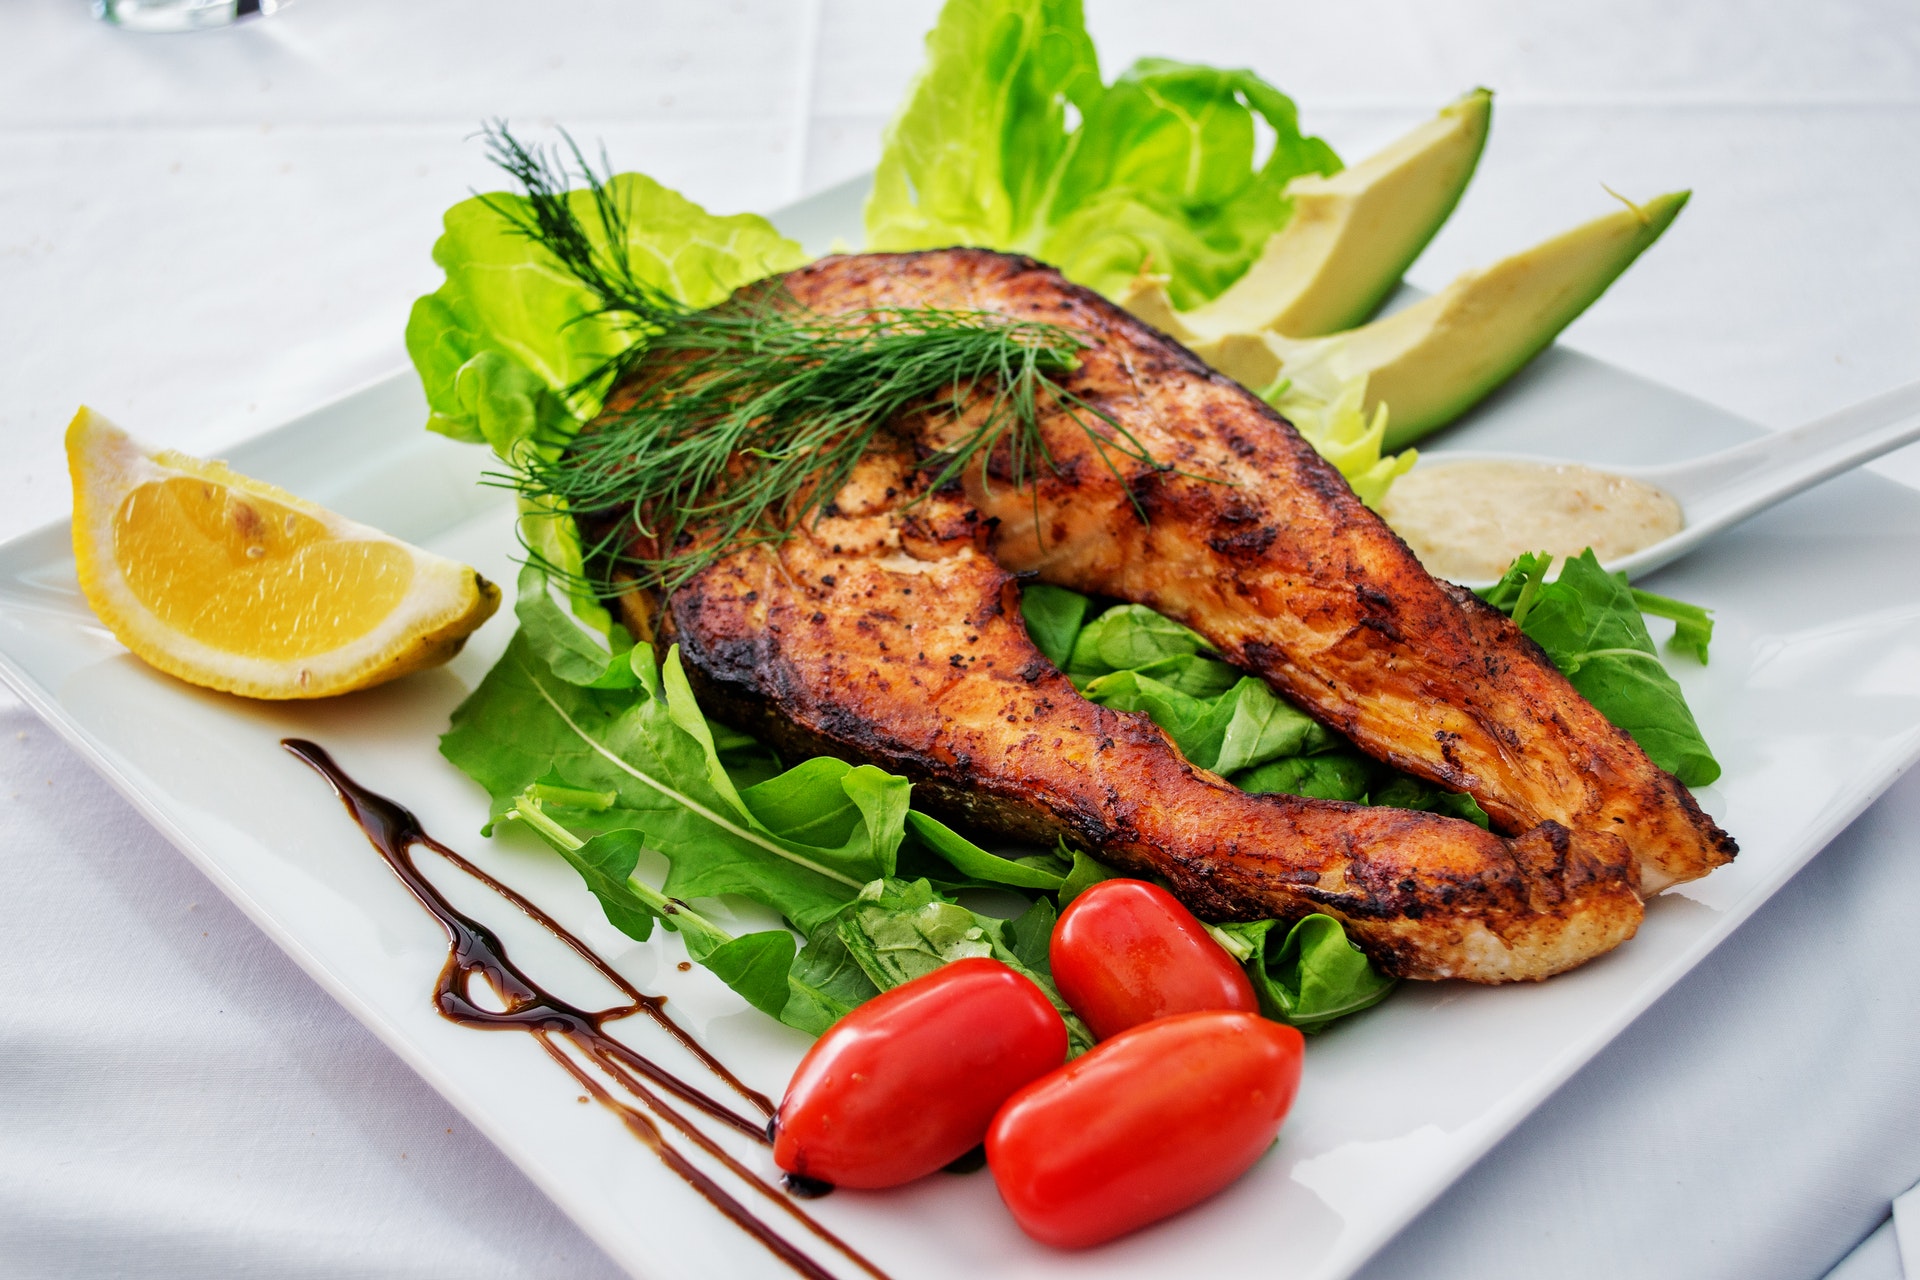 Manger du poisson permet d'avoir un bon apport en protéines 